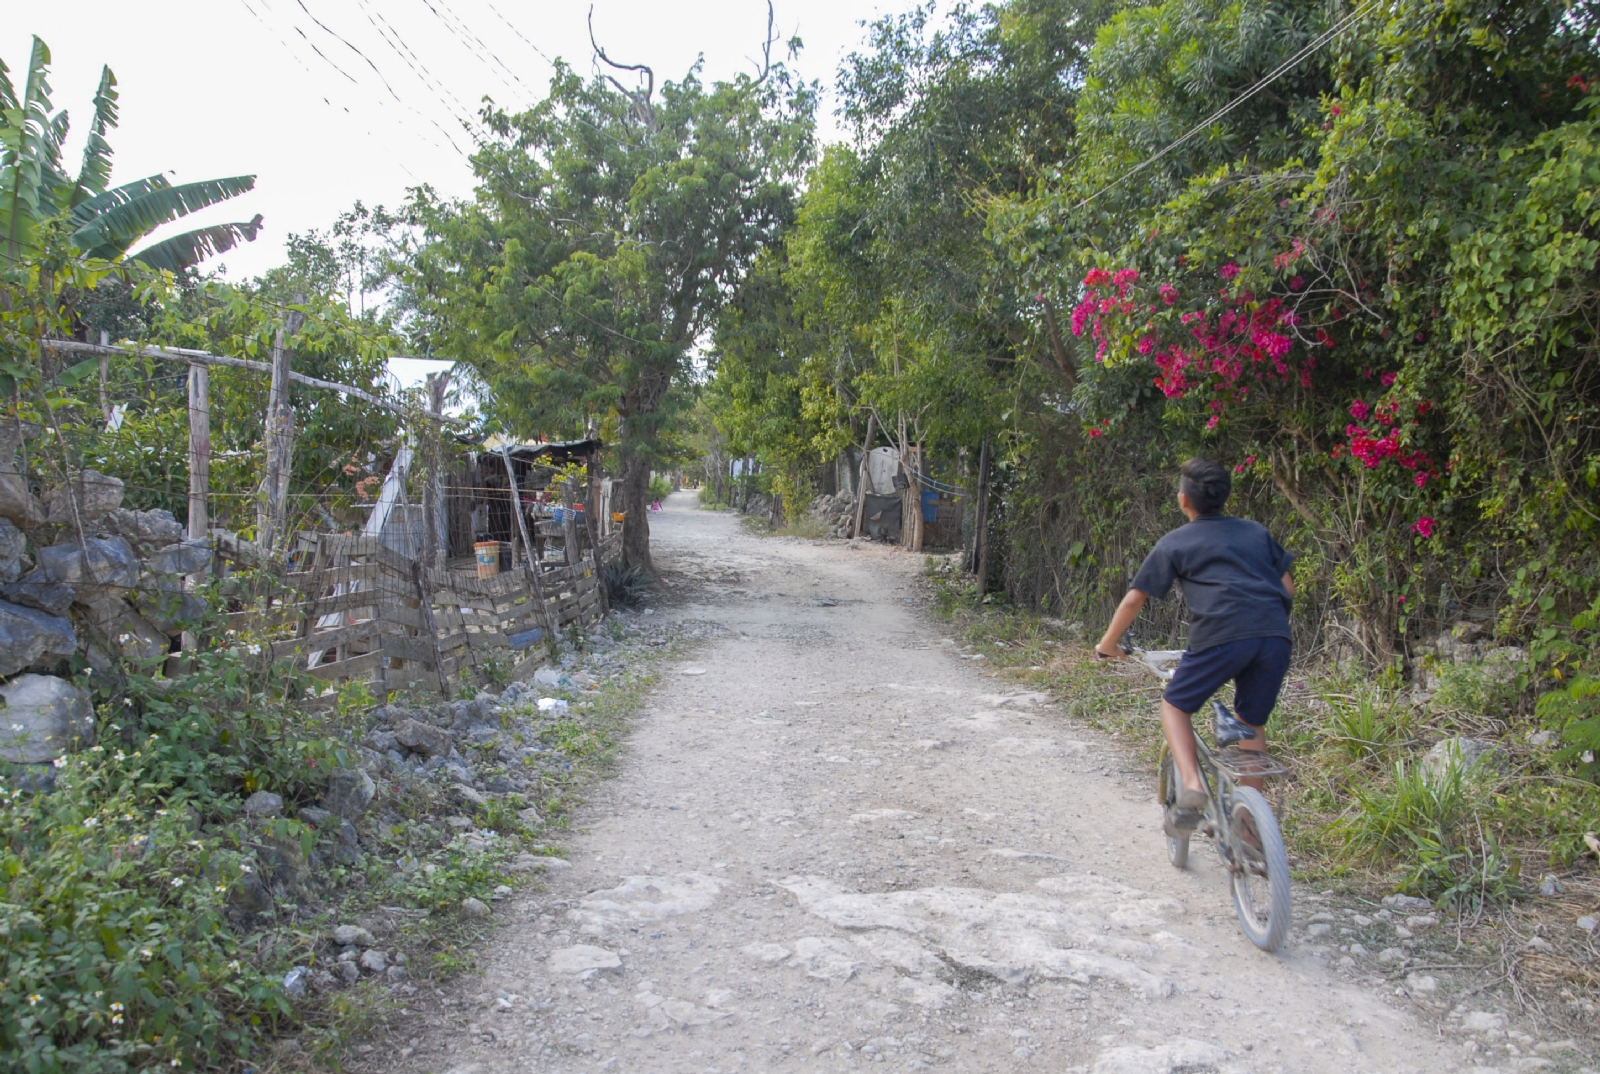 Por cada 100 personas en Quintana Roo 13 carecen de servicios básicos: Conapo